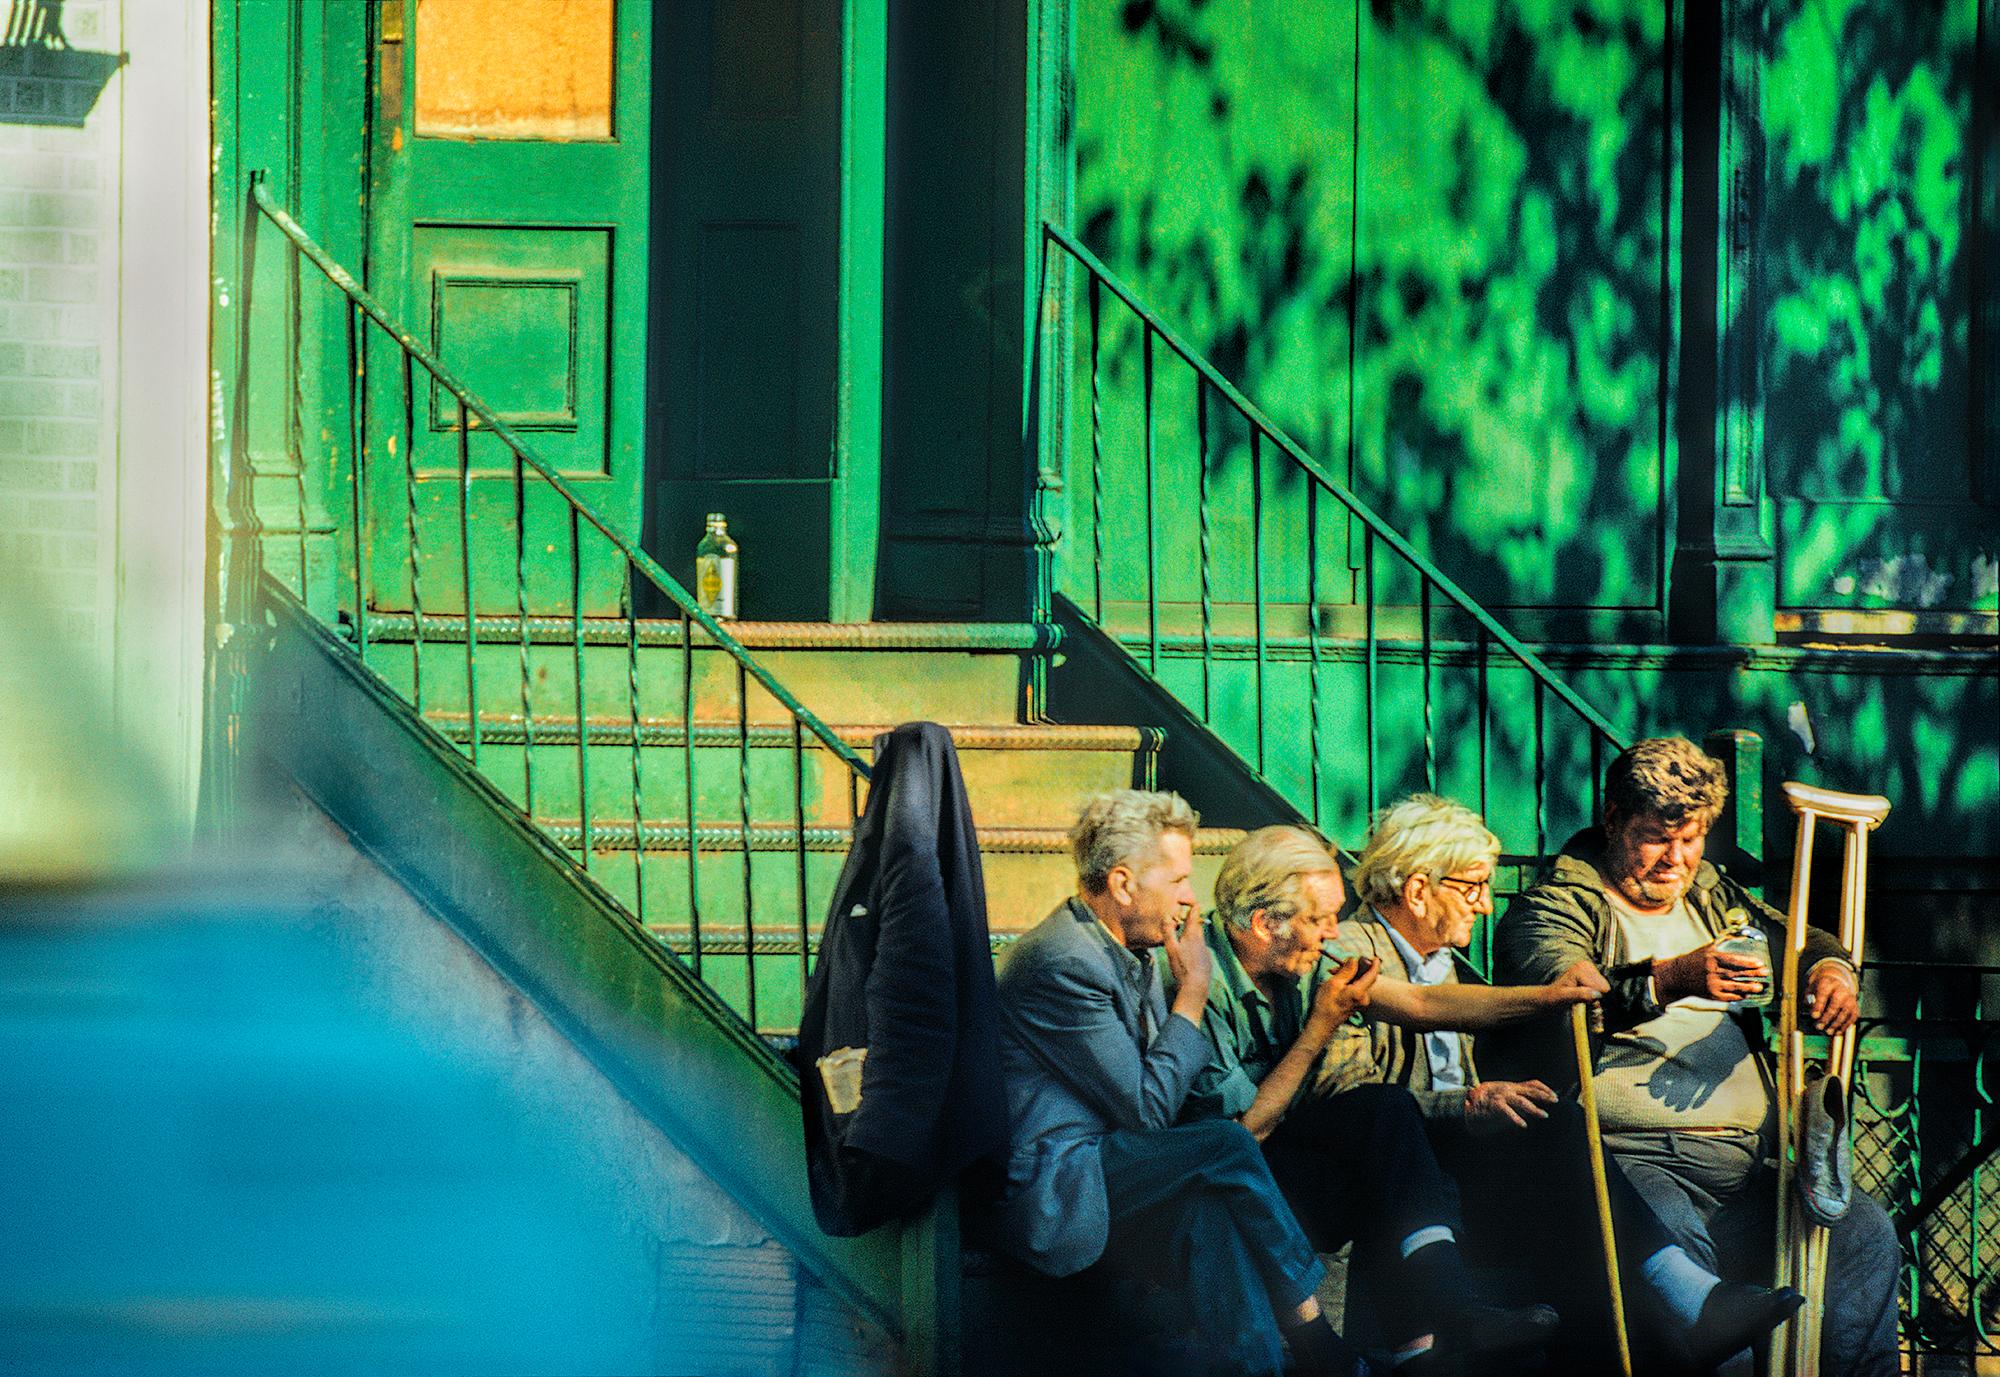 Mitchell Funk Color Photograph – East Village Mähne, Tramps Rauchen und Trinken an blau-grüner Wand